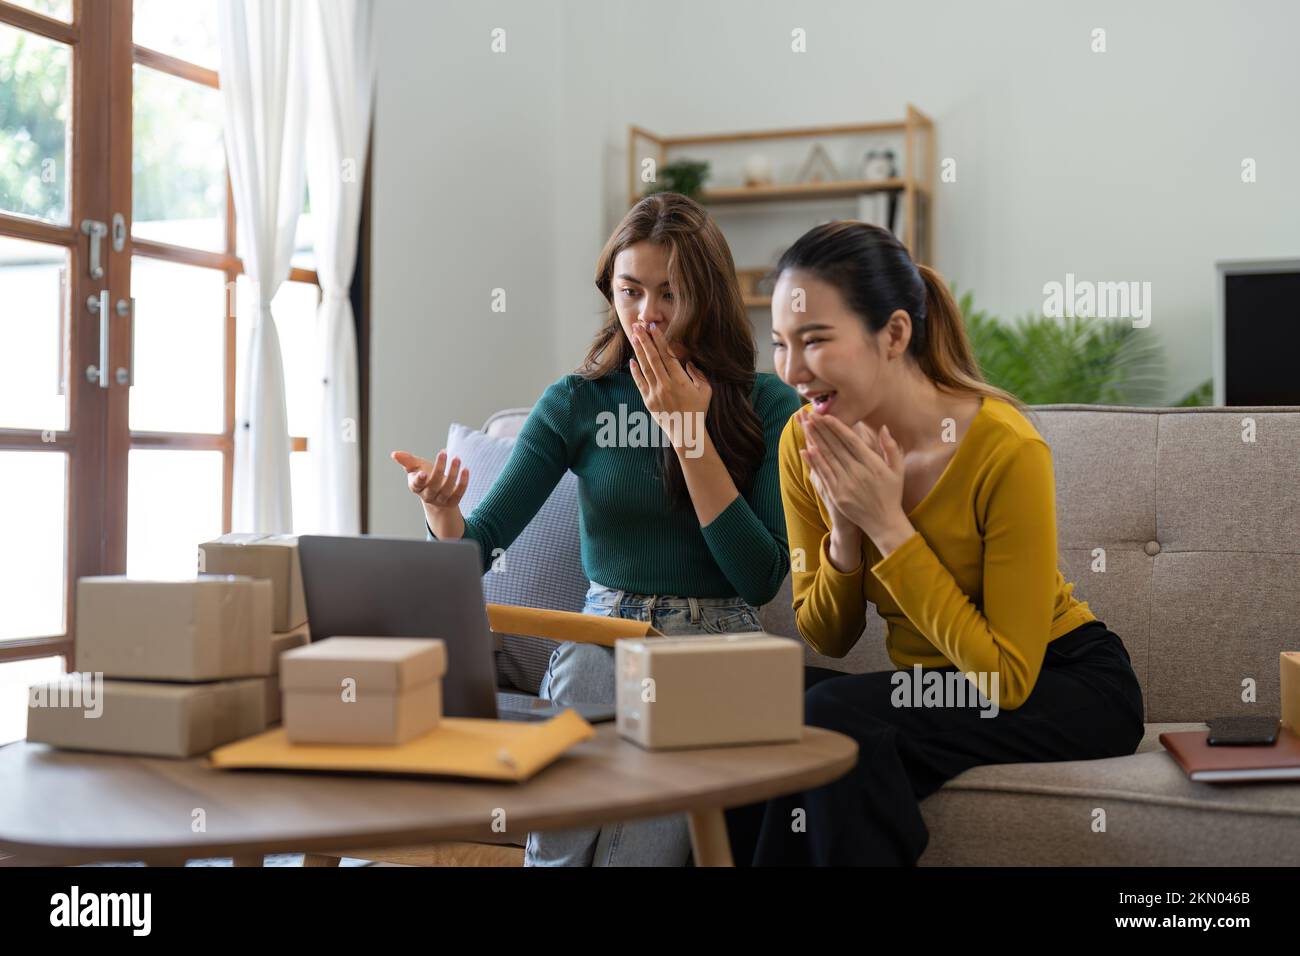 Deux jeunes femmes asiatiques sont heureuses et excitées après une nouvelle commande de client PME, contrôle commercial, marketing en ligne, emballage des boîtes de l'entrepreneur Banque D'Images